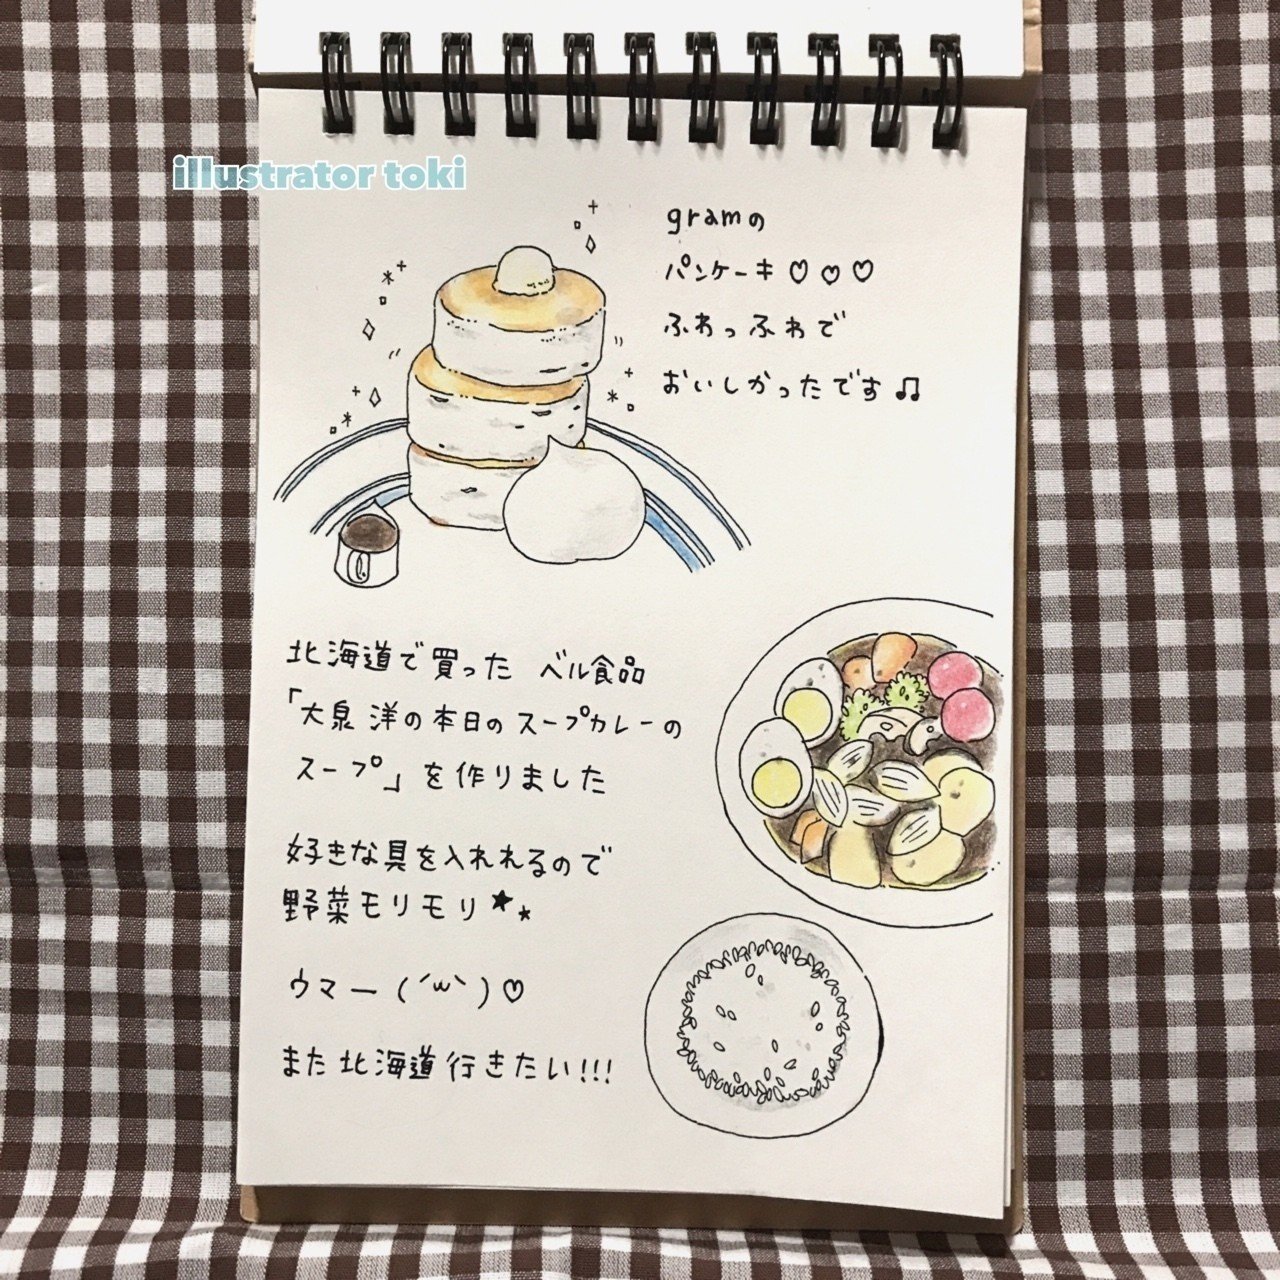 食べ物日記 とき 10 24 25鳥フェス大阪 Note